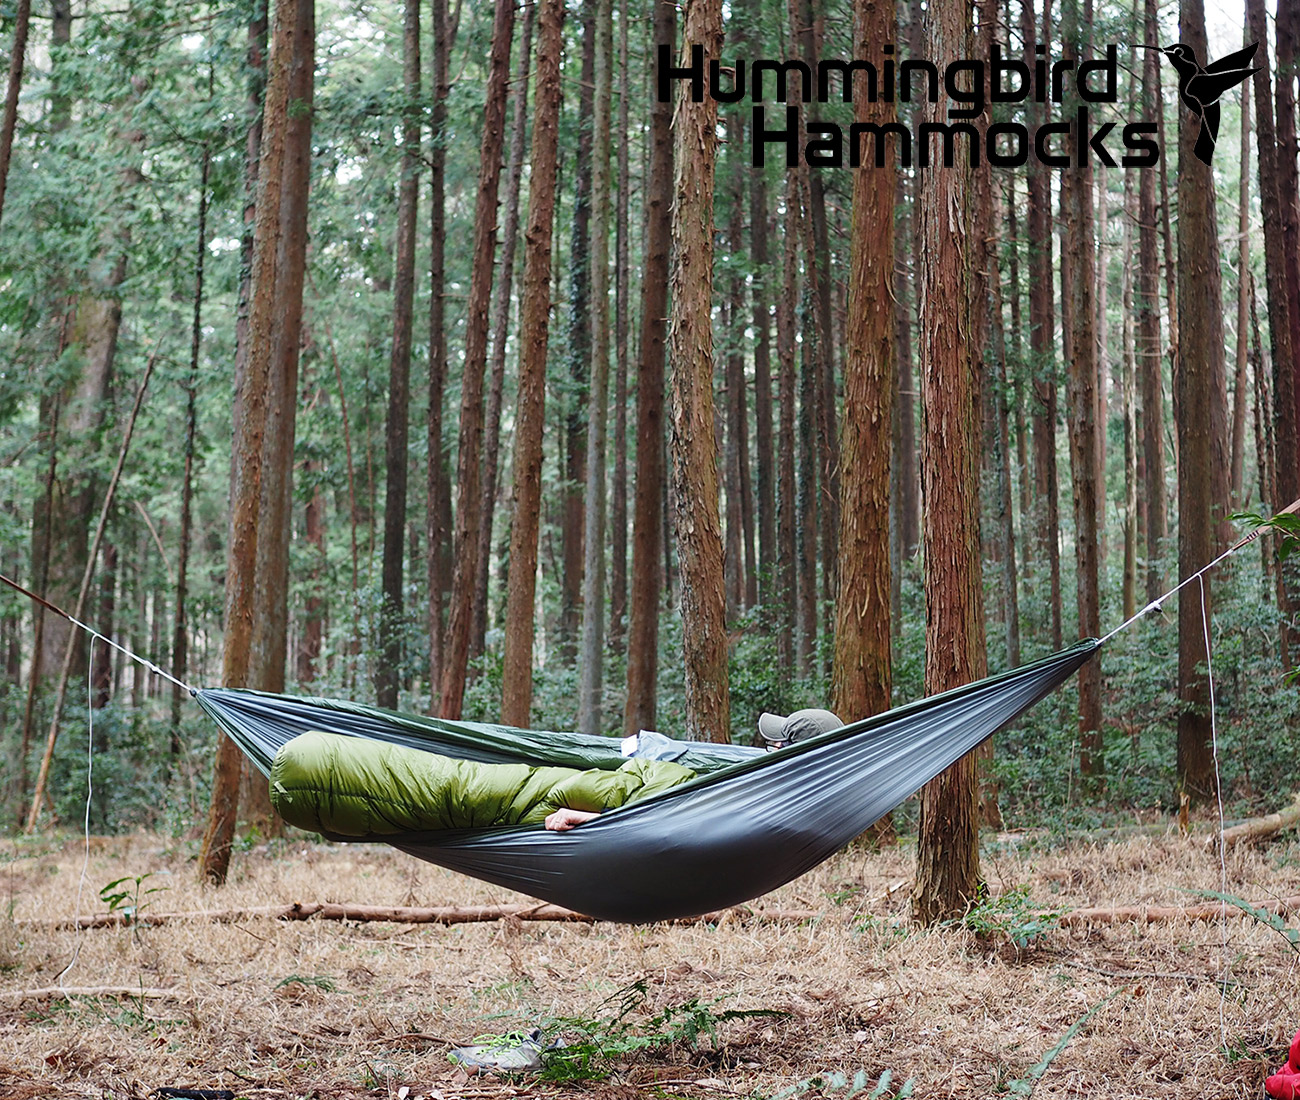 Hummingbird Hammocks / ハミングバード ハンモック - MoonlightGear - ムーンライトギア